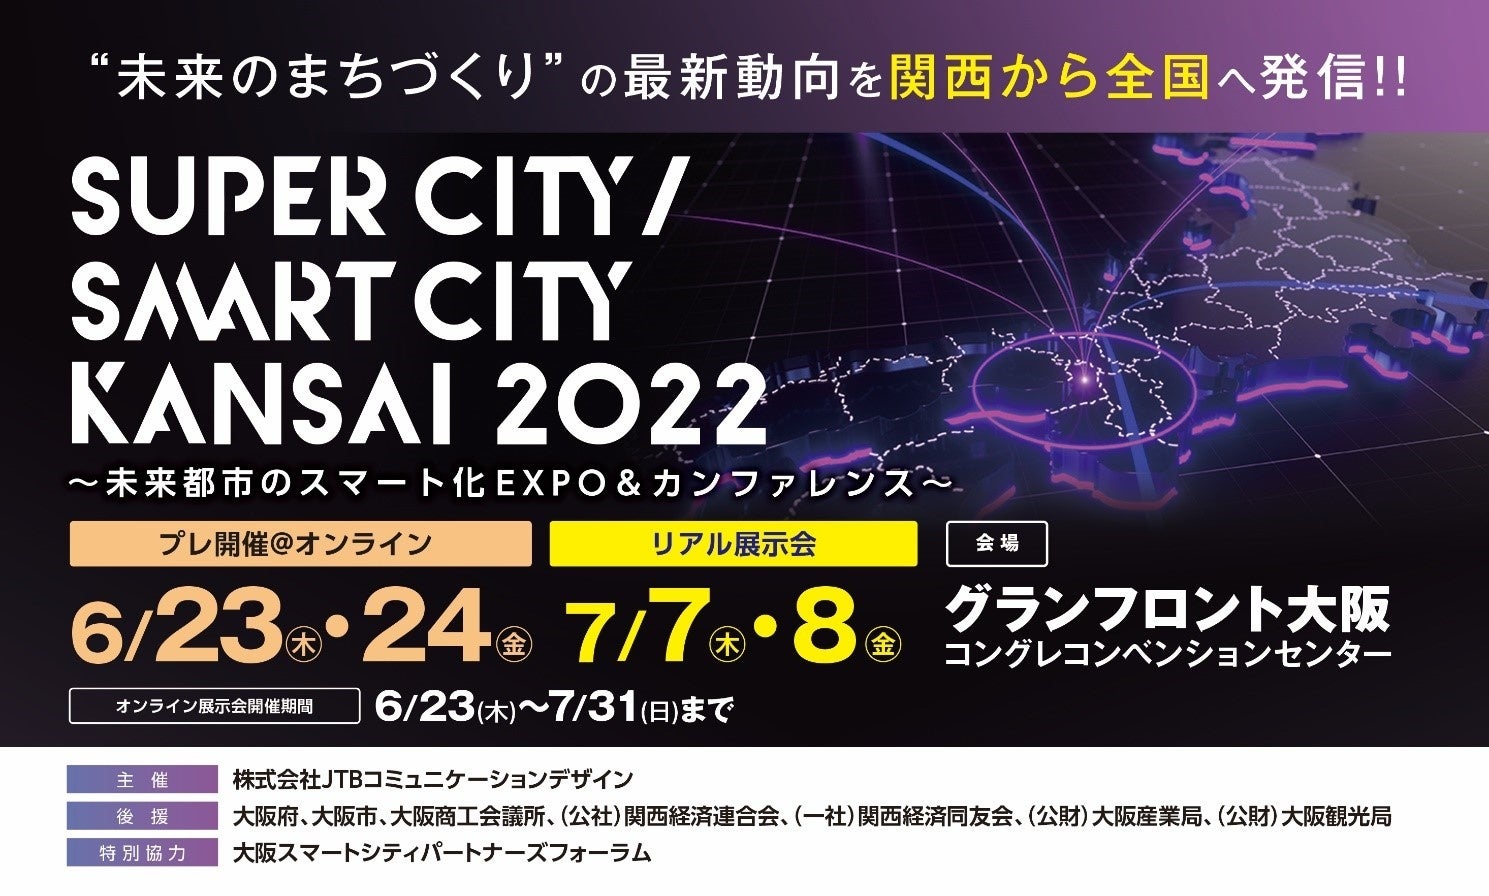 【来週開催】スーパーシティ・スマートシティ業界に特化した展示会「Super City / Smart City KANSAI 2022」のサブ画像1